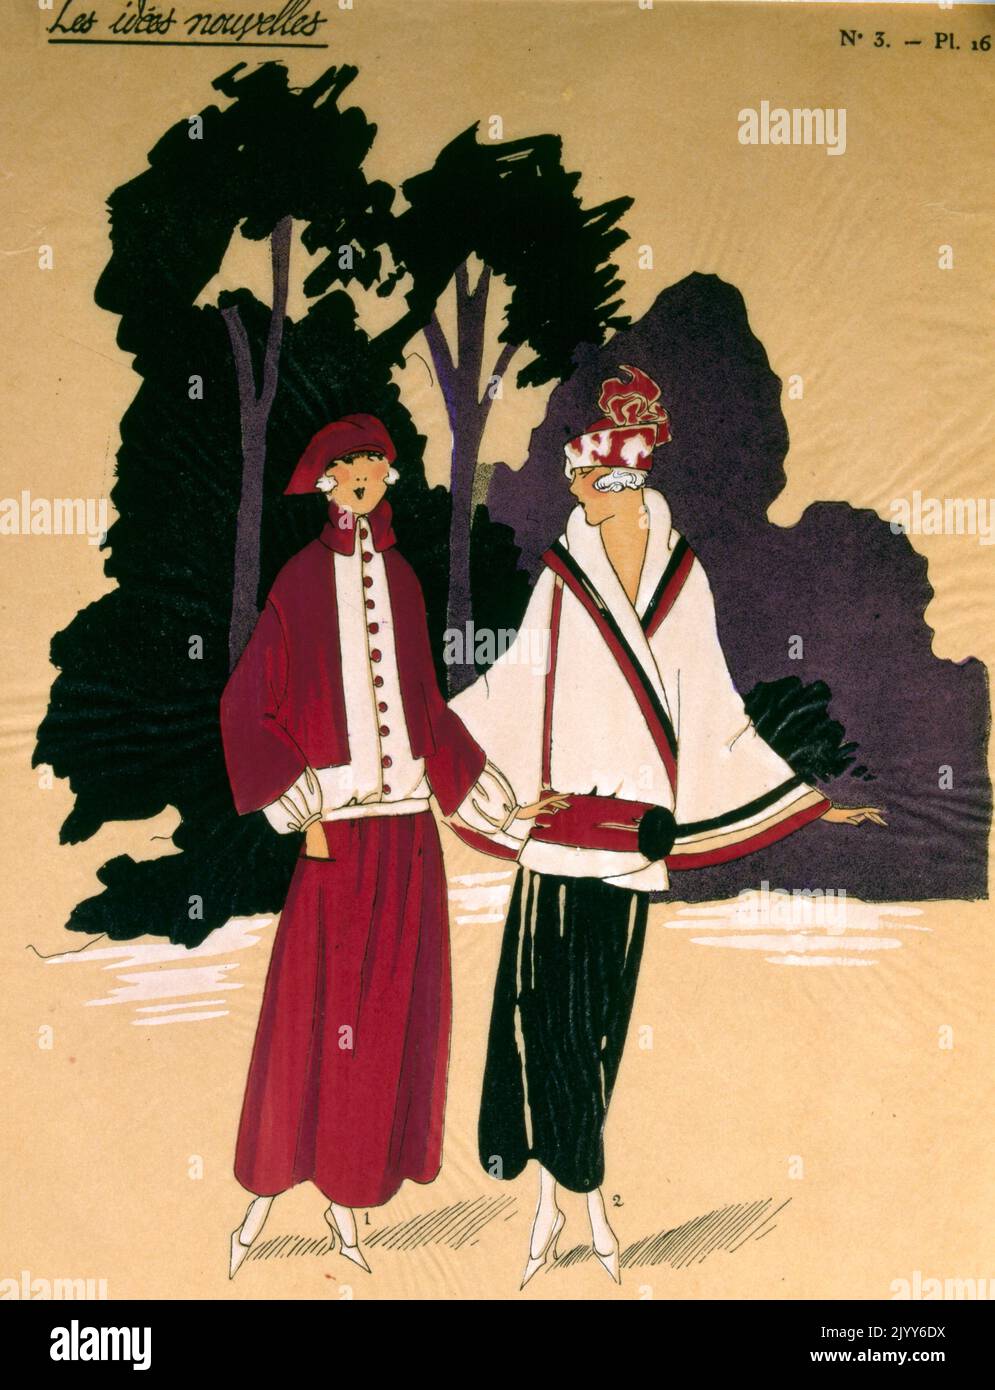 Illustrazione a colori da una rivista di moda intitolata New Ideas, numero 3, targa 16; due donne camminano all'esterno in costume influenzato dall'Oriente. Foto Stock